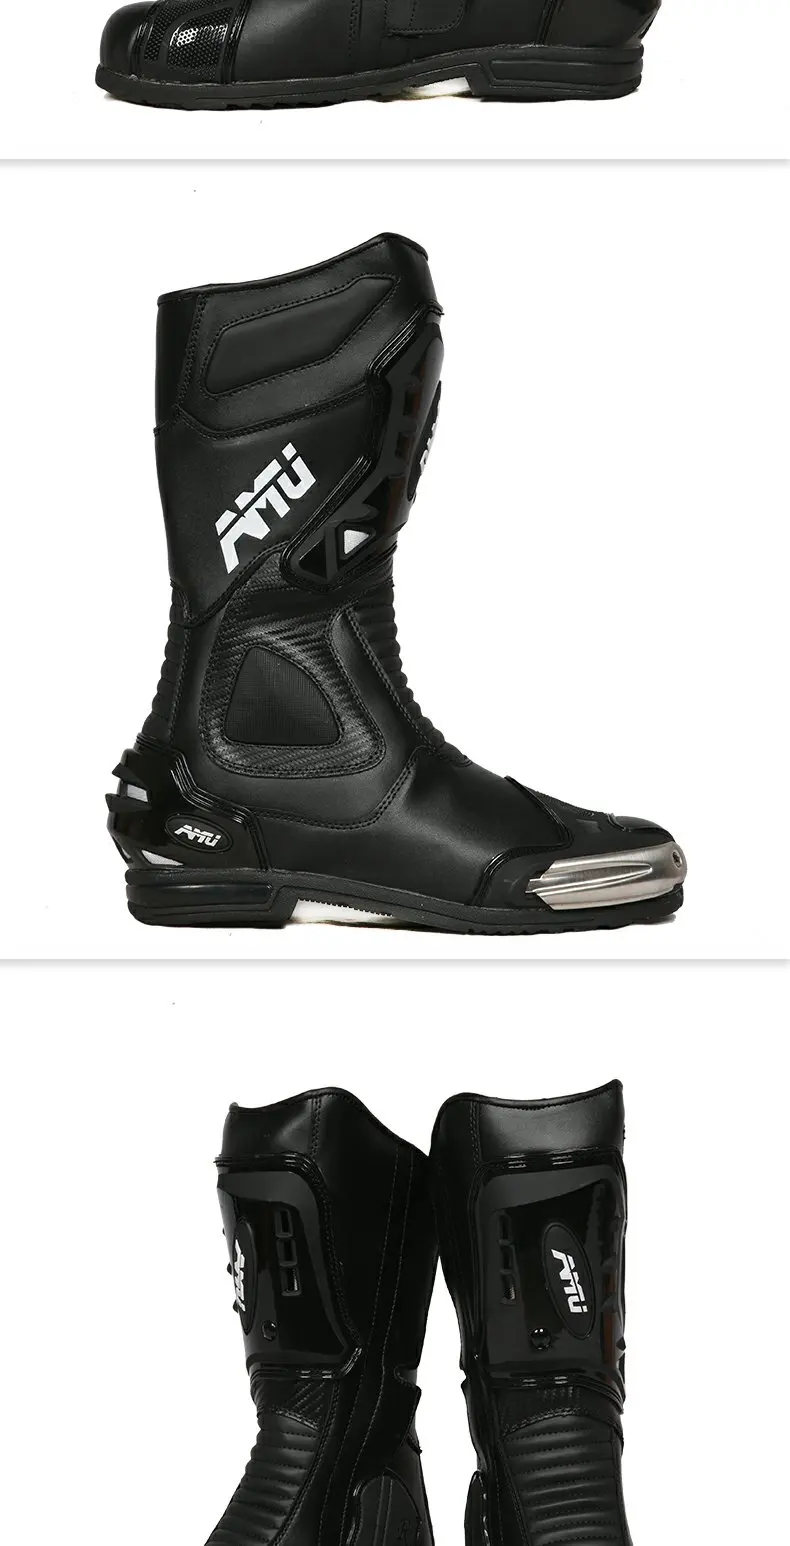 AMU мотоциклетные защитные ботинки для мотокросса, мотокросса, грязи, байкерских ботинок, беговые Водонепроницаемые кожаные ботинки